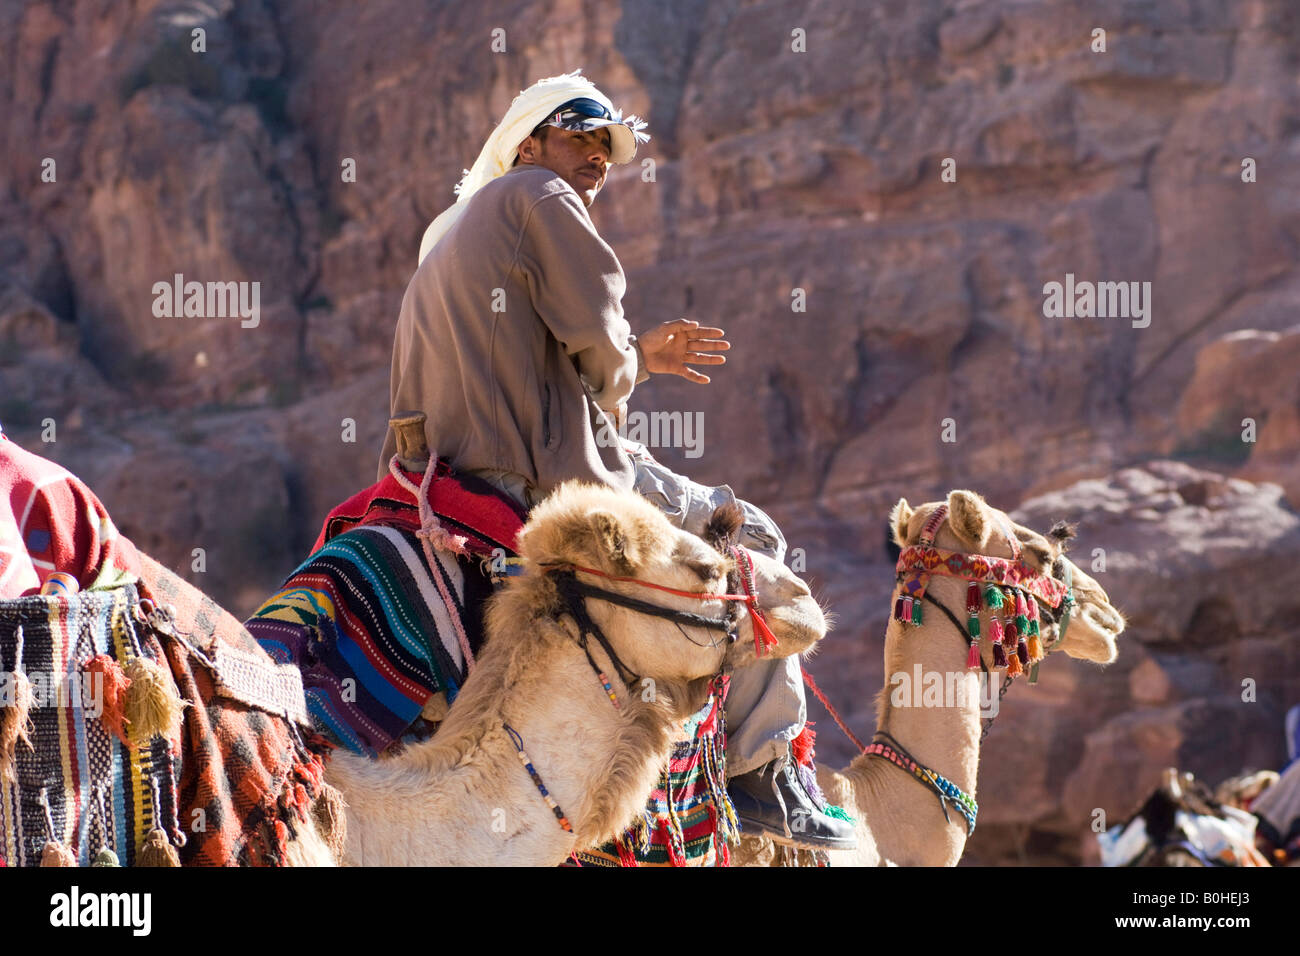 Homme bédouin avec des chameaux, Petra, Jordanie, Moyen-Orient Banque D'Images